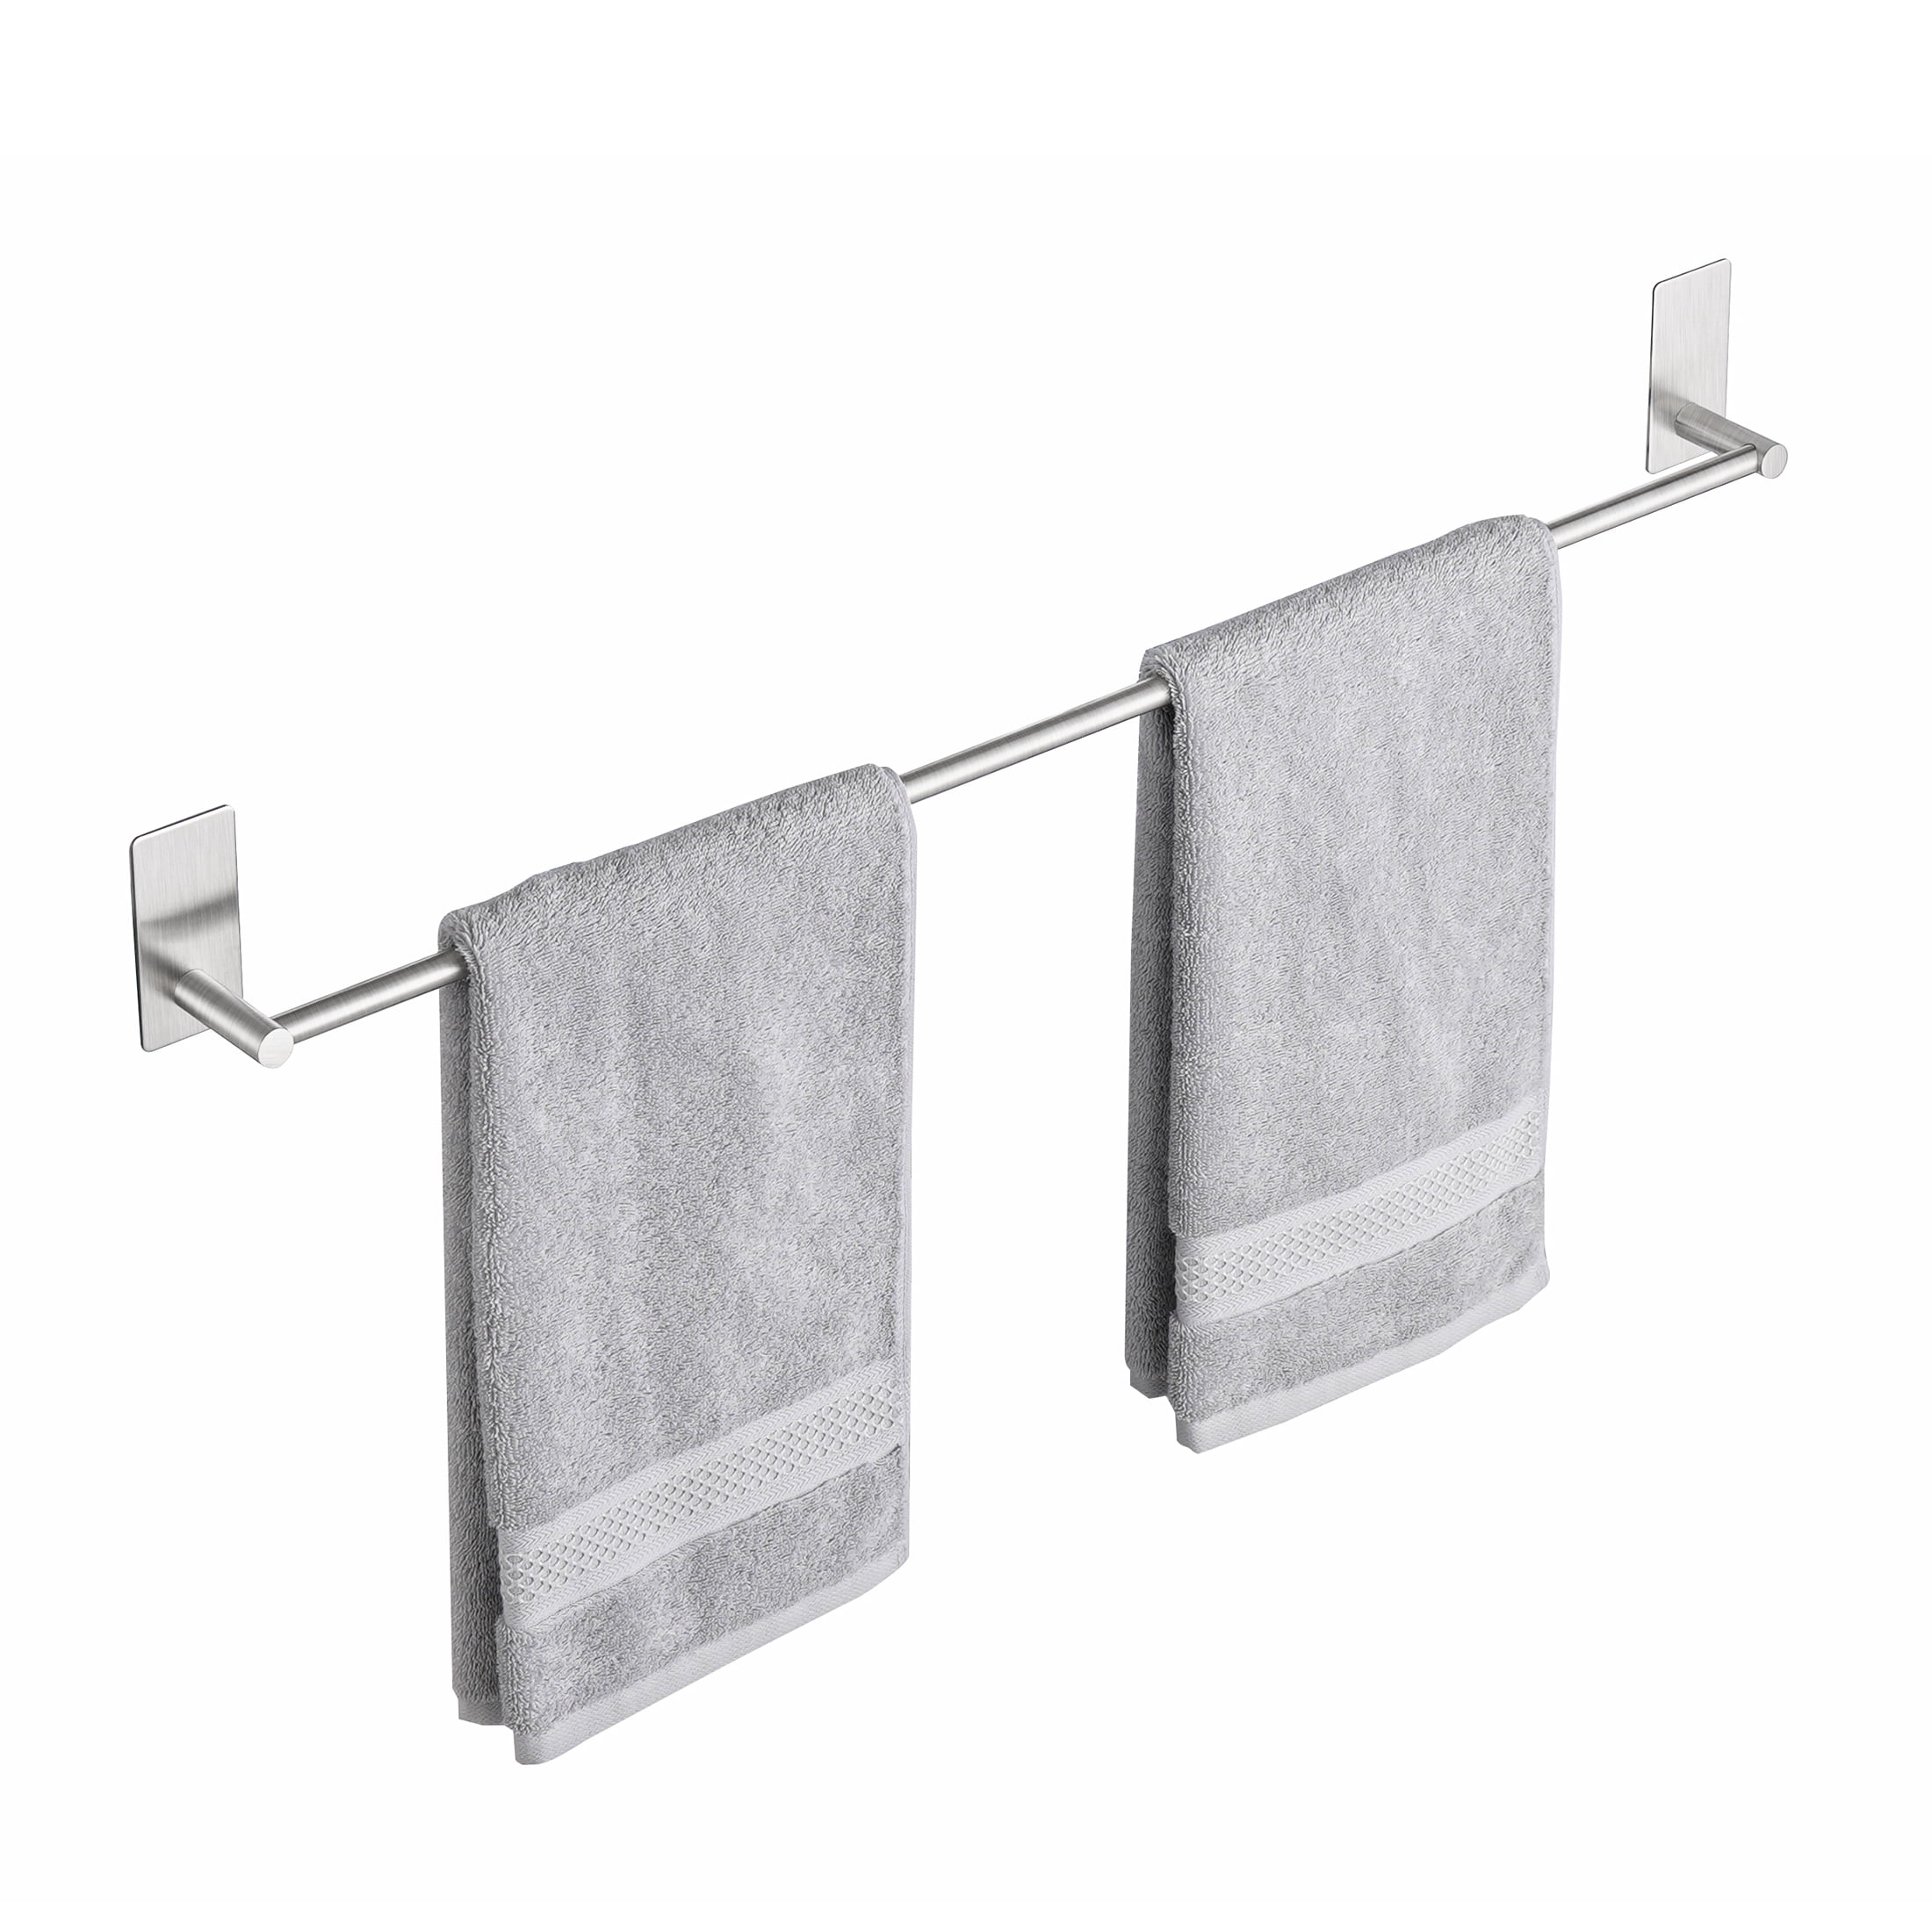 Interdesign 20.5 cm Forma Self Adhesive Towel Bar 67580